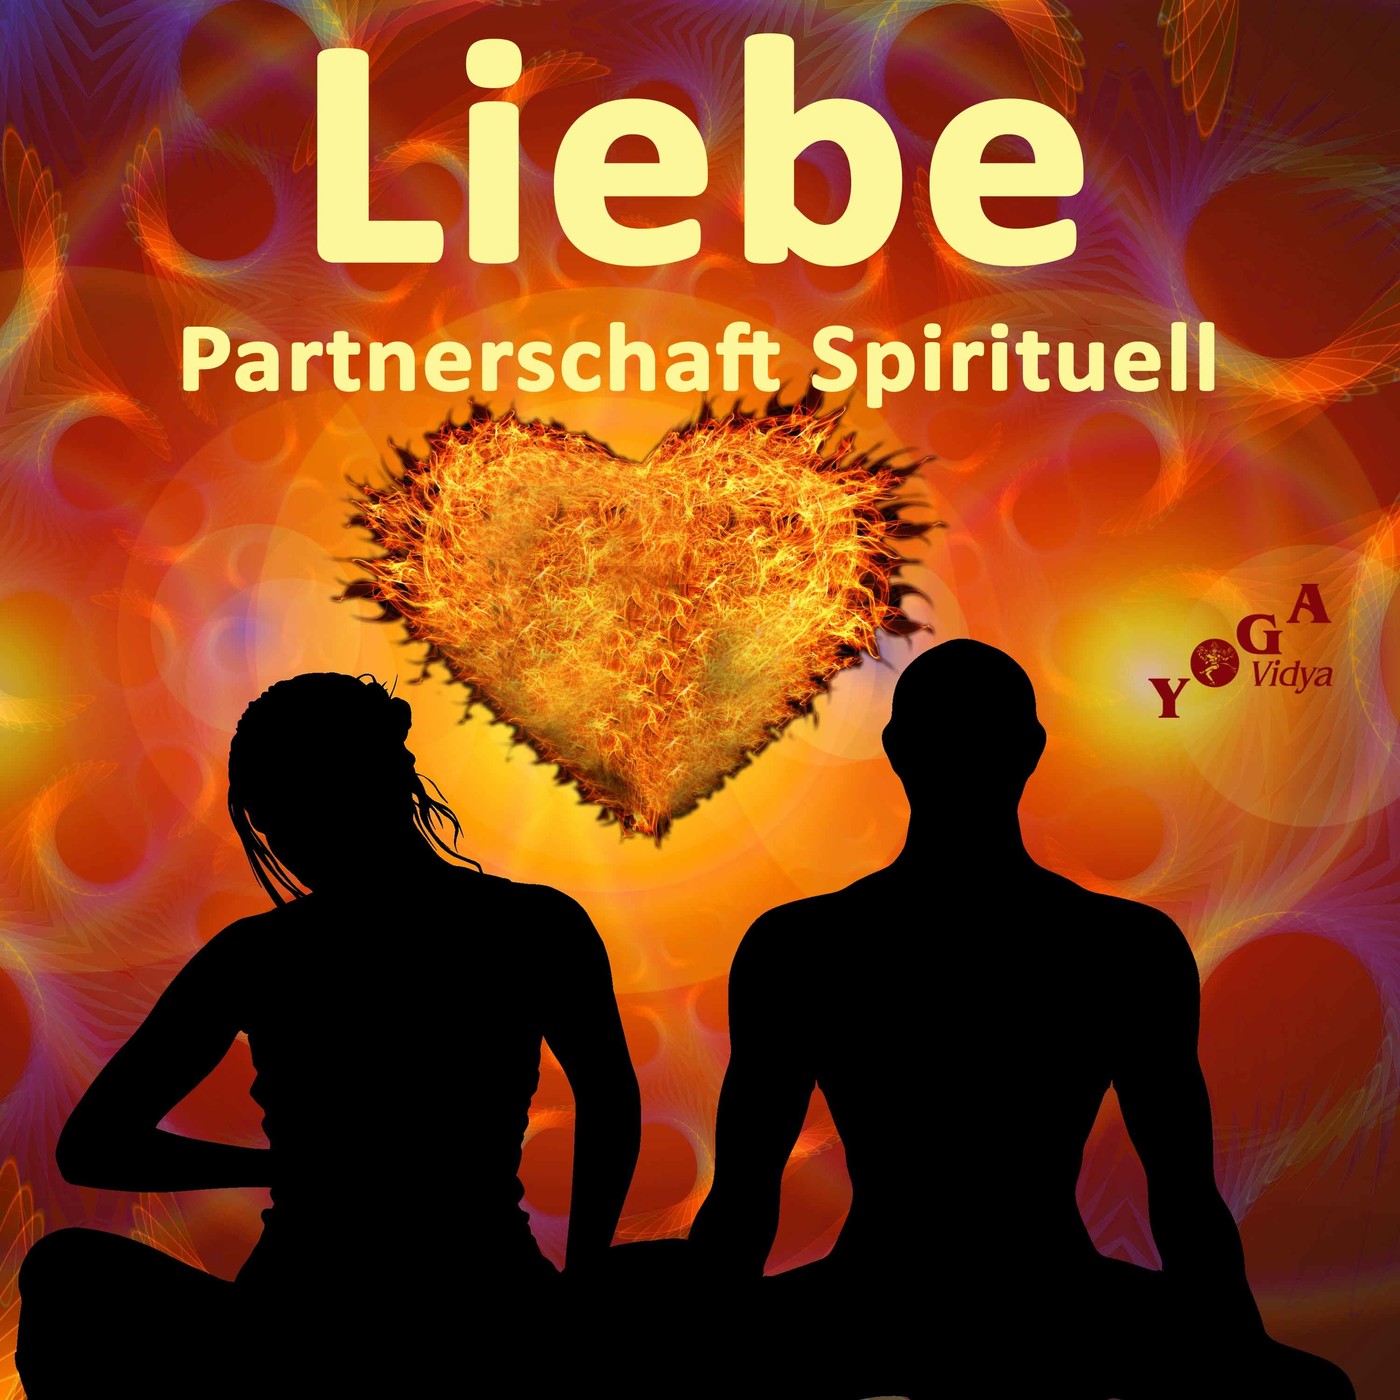 Liebe, Beziehung, Partnerschaft - Spirituell, Children and education.